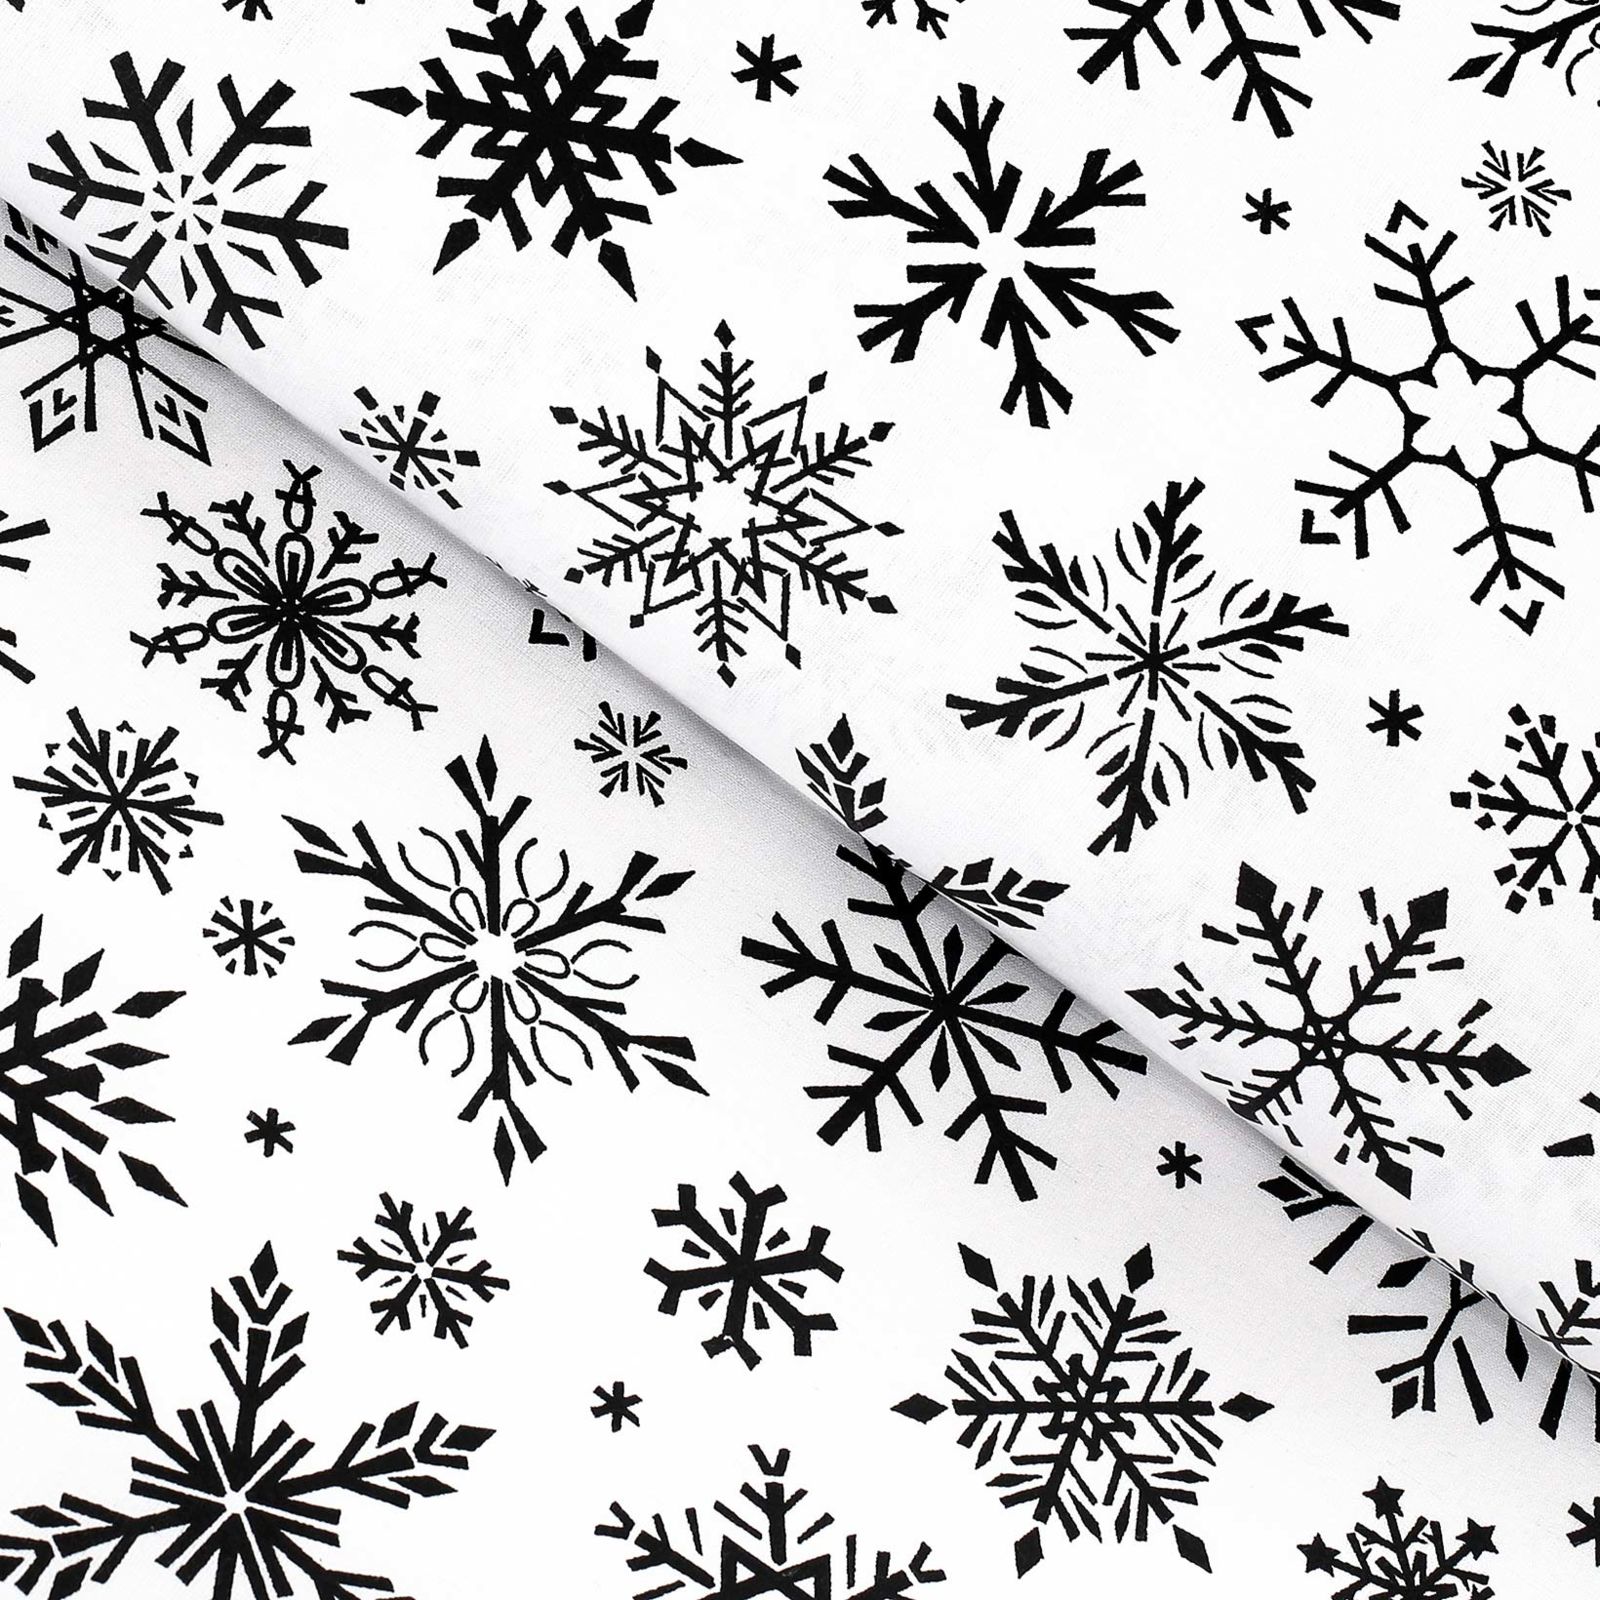 Karácsonyi pamutvászon - cikkszám 1160 fekete hópihék fehér alapon